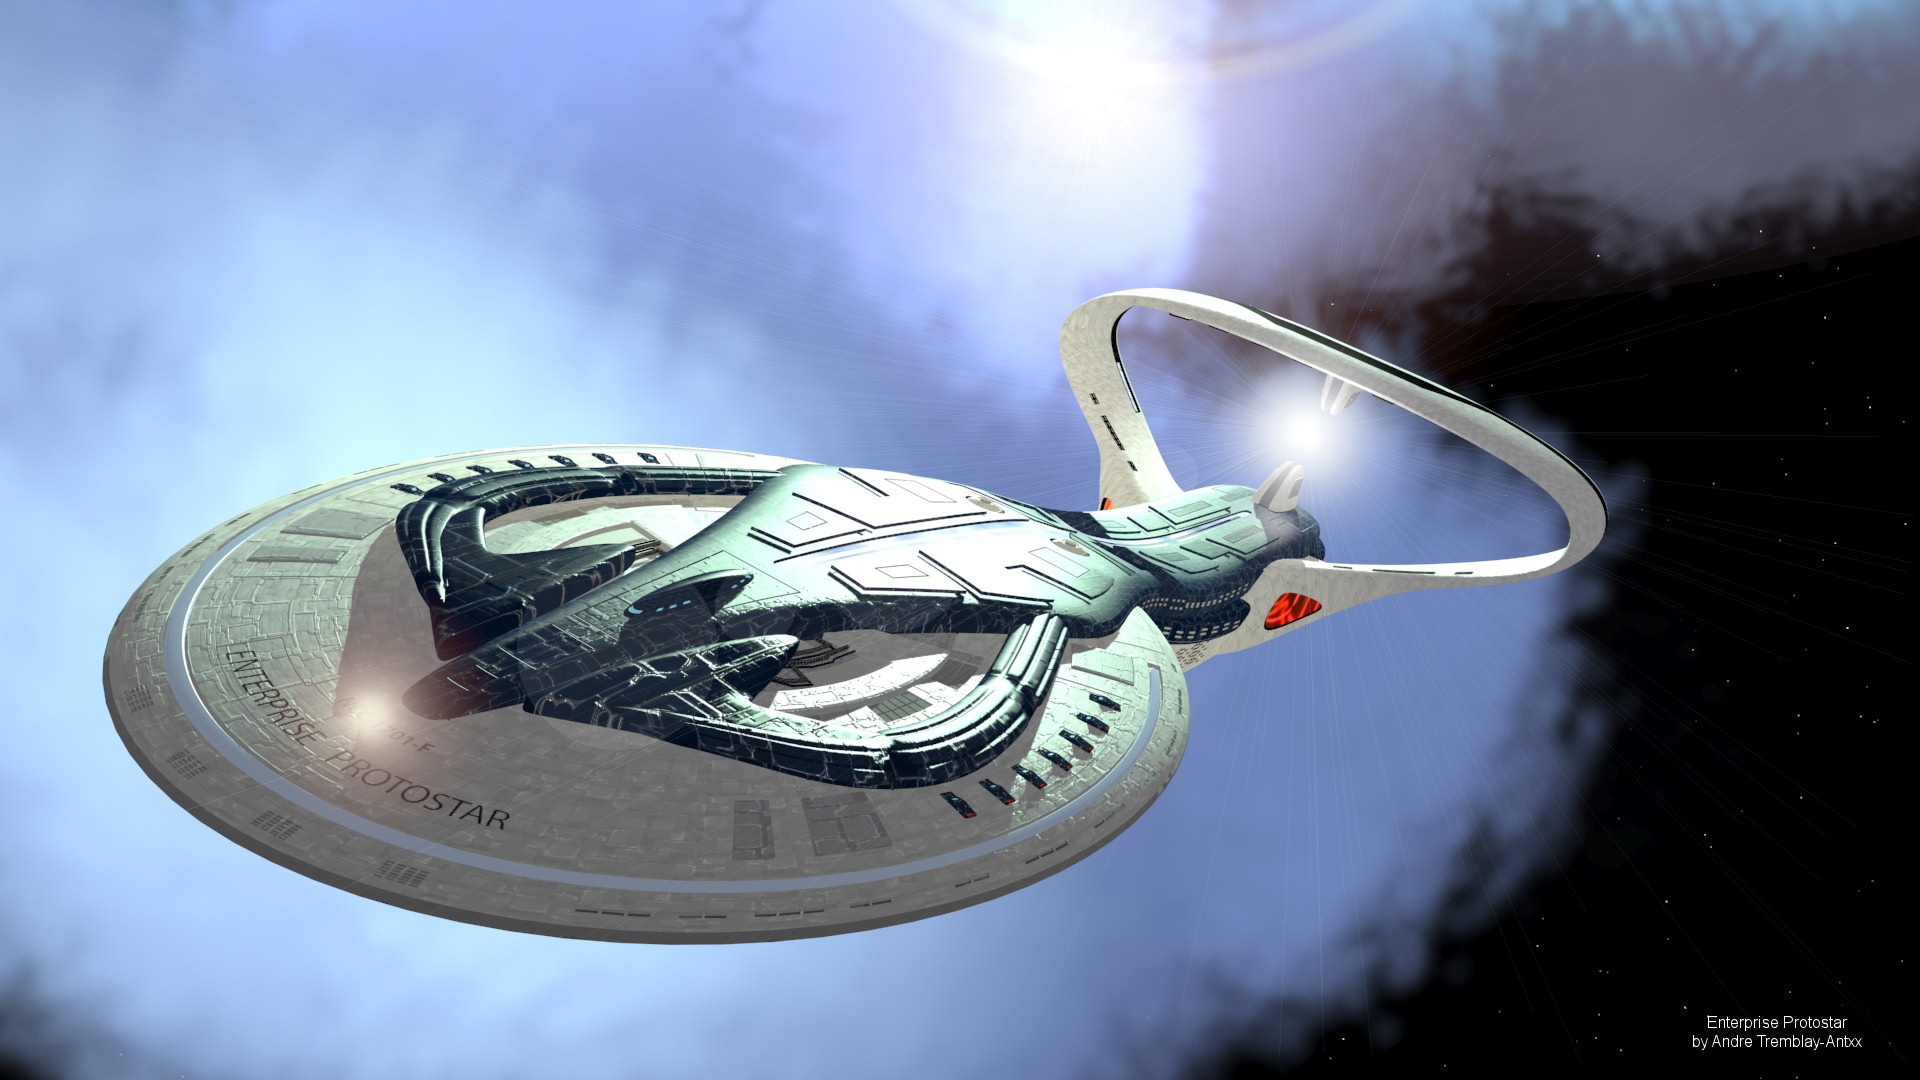 Star Trek Enterprise Protostar Wallpapers